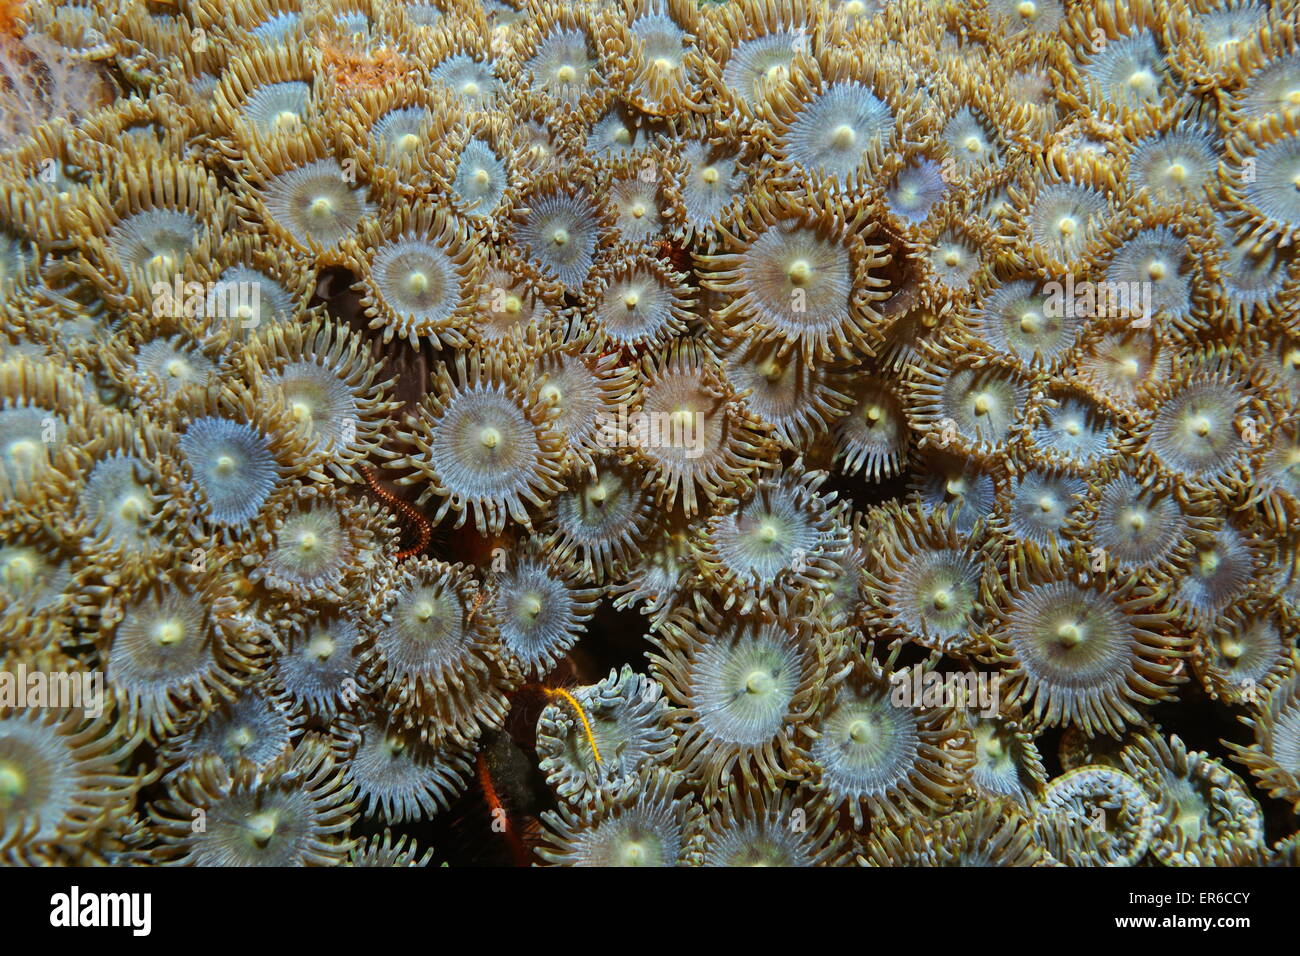 La vie sous-marine, Close up image d'une colonie de Zoanthus pulchellus zoanthid, Mat, mer des Caraïbes Banque D'Images